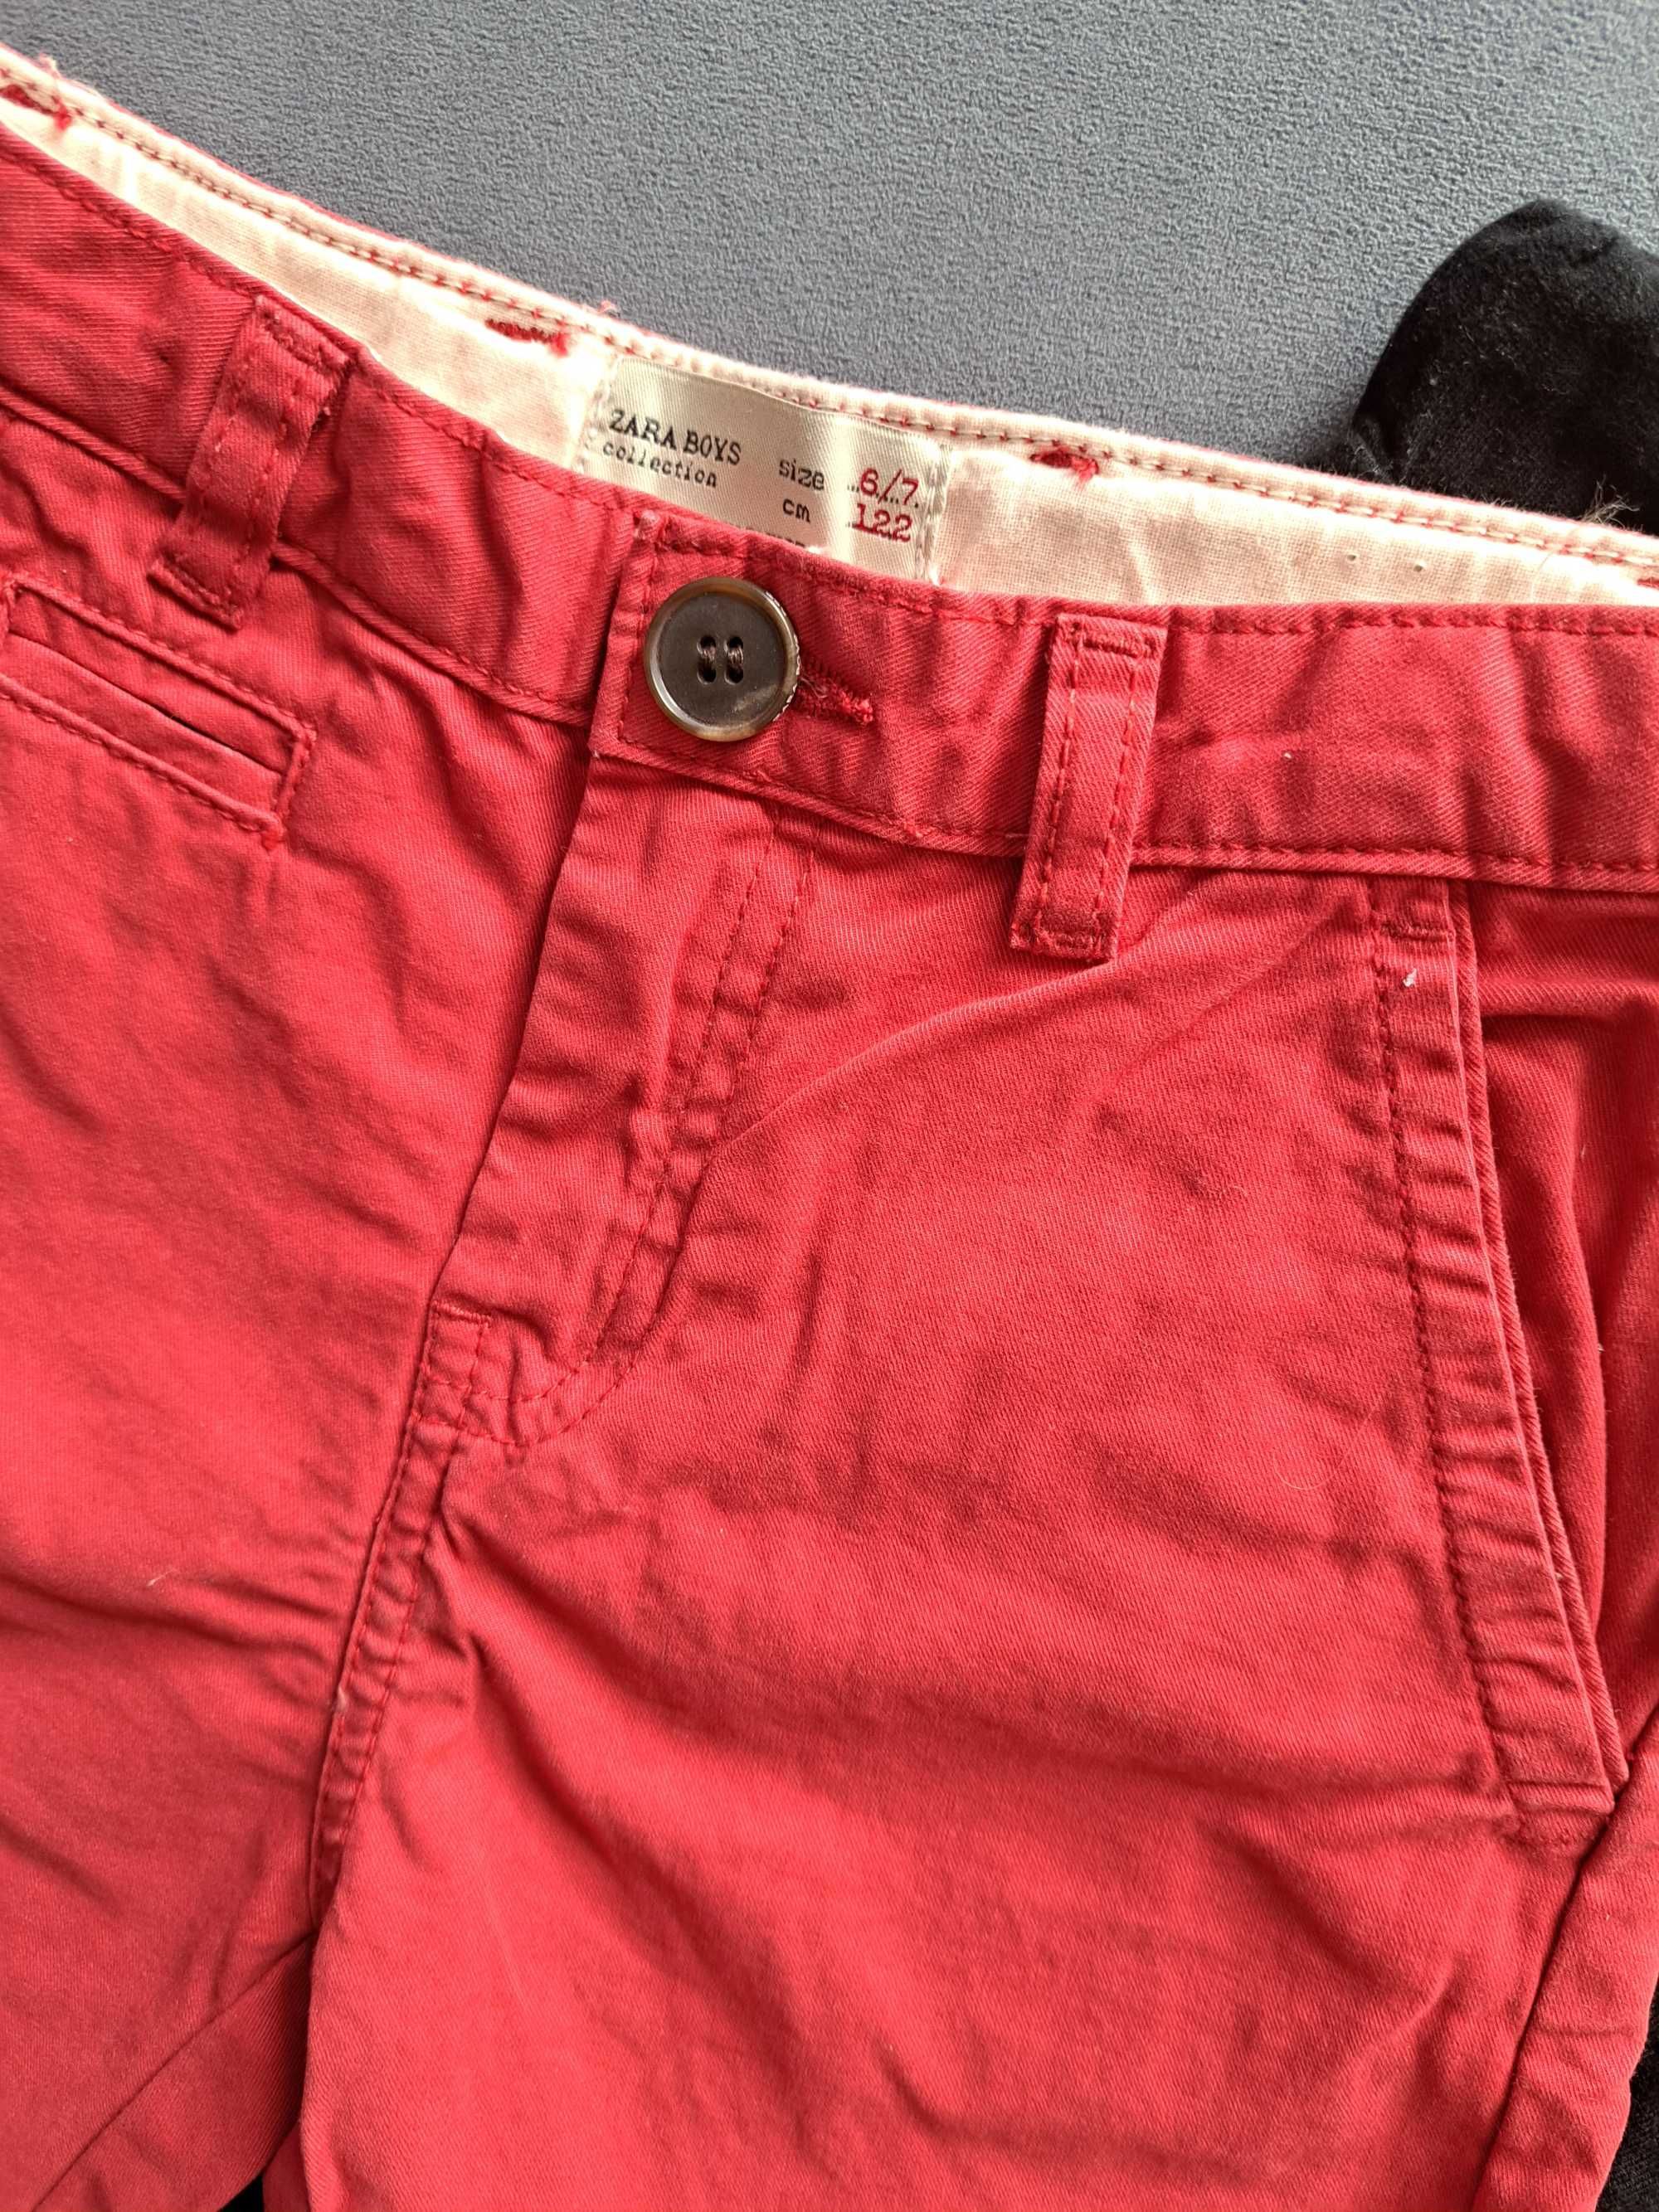 Krótkie spodenki bermudy szorty czerwone Zara 6/7 lat 122 cm gratis.